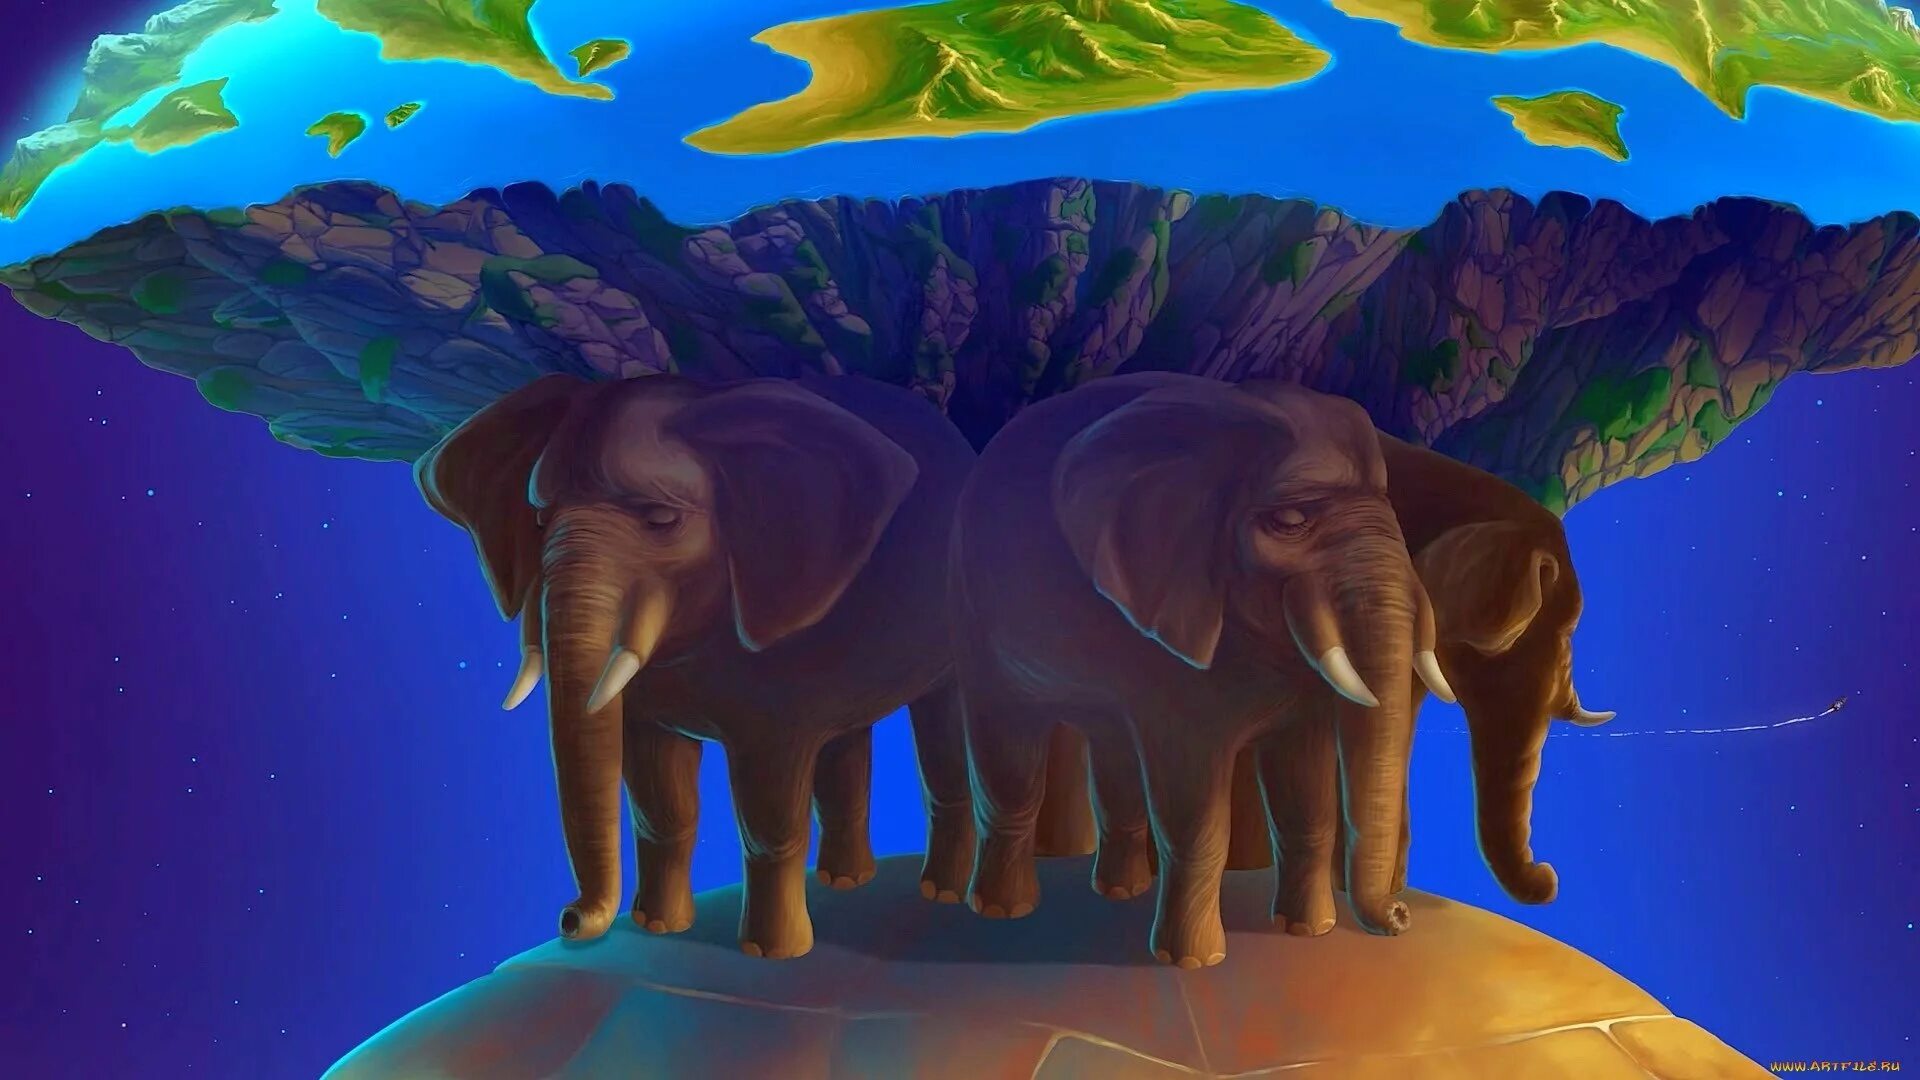 Мир на трех слонах. Черепаха три слона плоская земля. Космическая черепаха Терри Пратчетт. Земля на слонах.